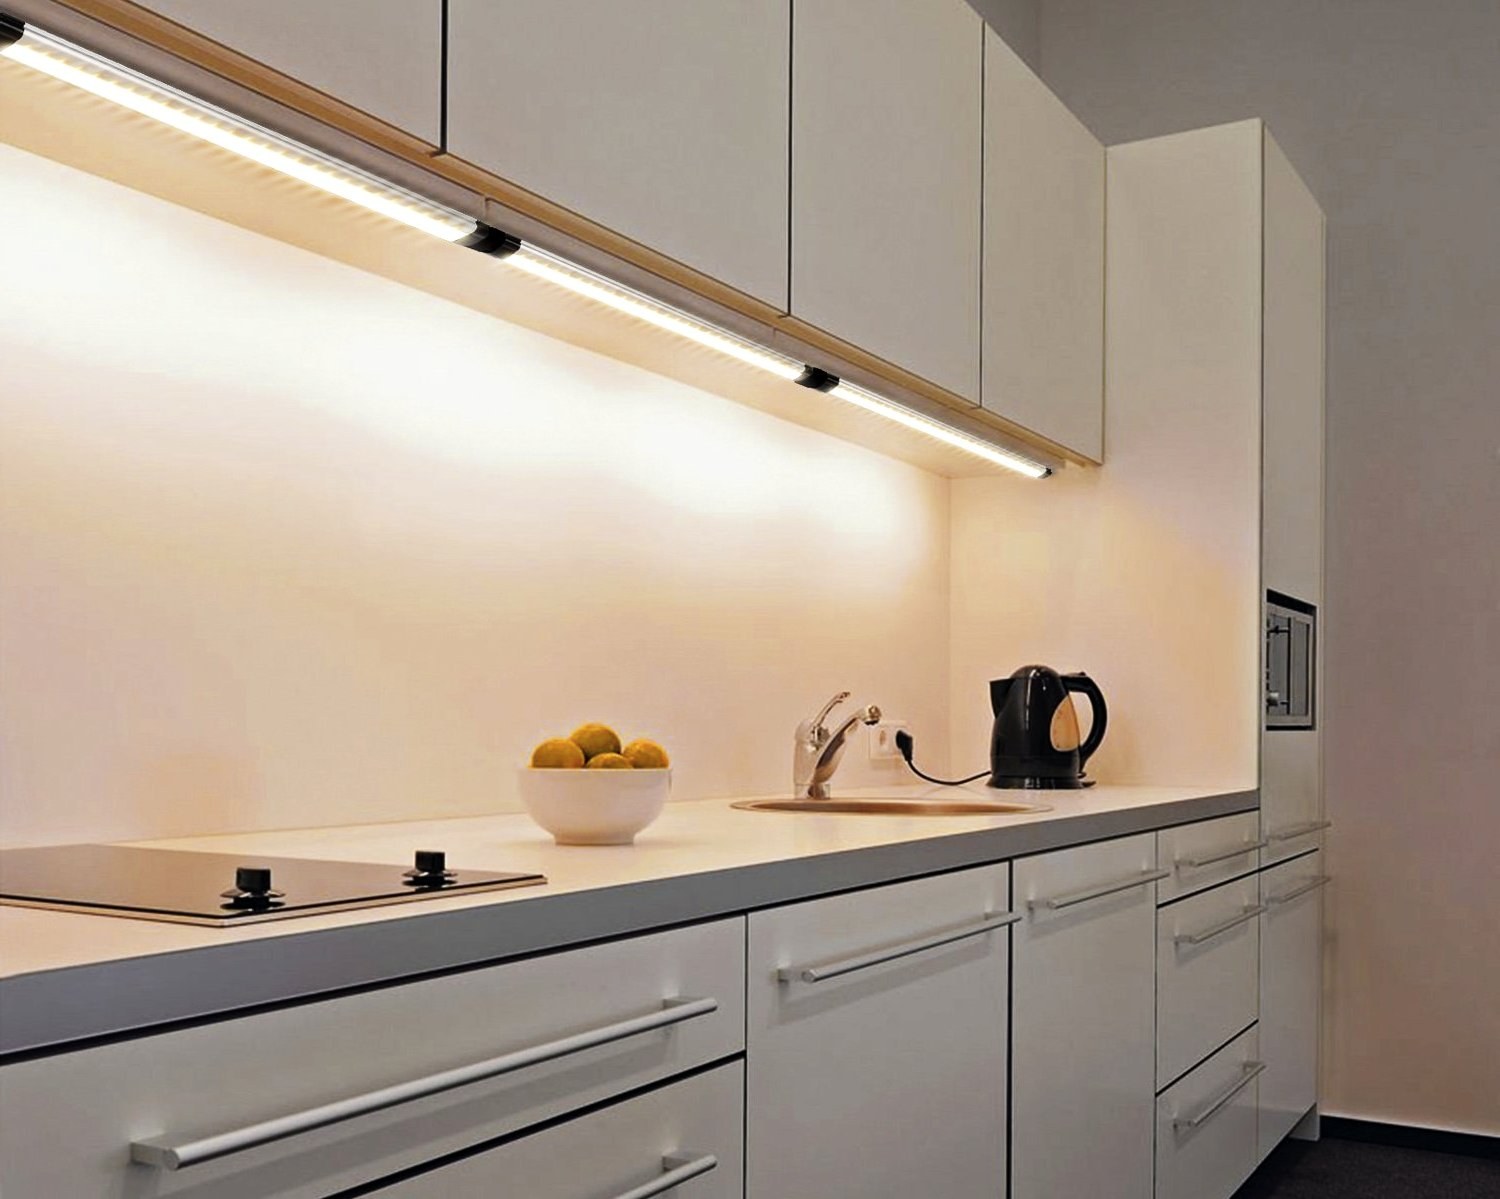 Кухня теплый свет. Подсветка кухни 220 вольт. Подсветка для кухни под шкафы светодиодная. Подсветка под кухонными шкафами. Светодиодная подсветка столешницы.